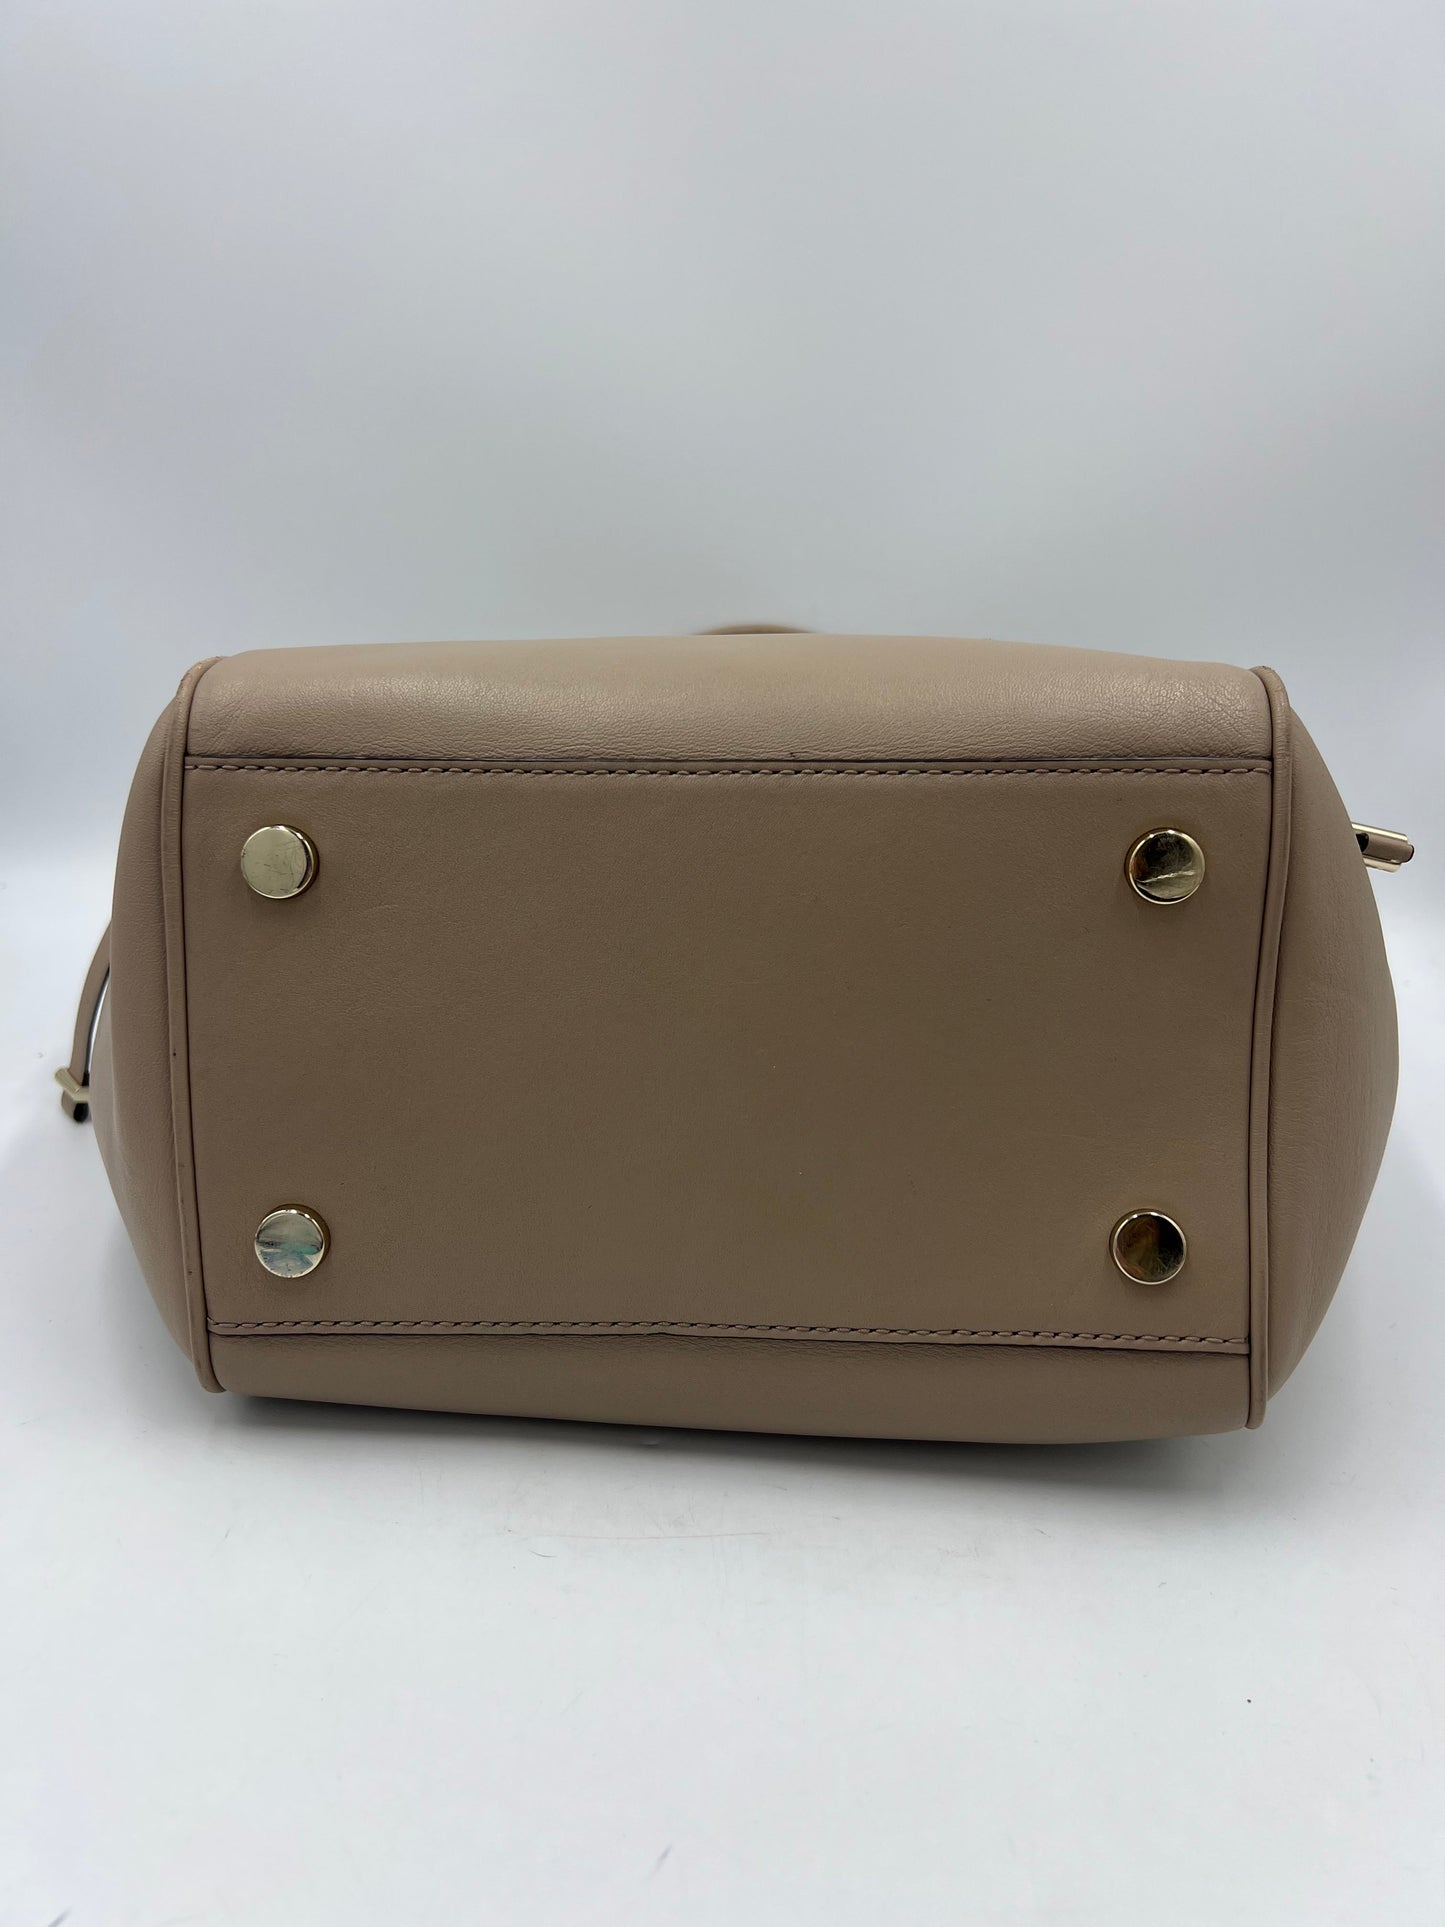 Michael Kors Smooth Leather Handbag w/ Shoulder Strap